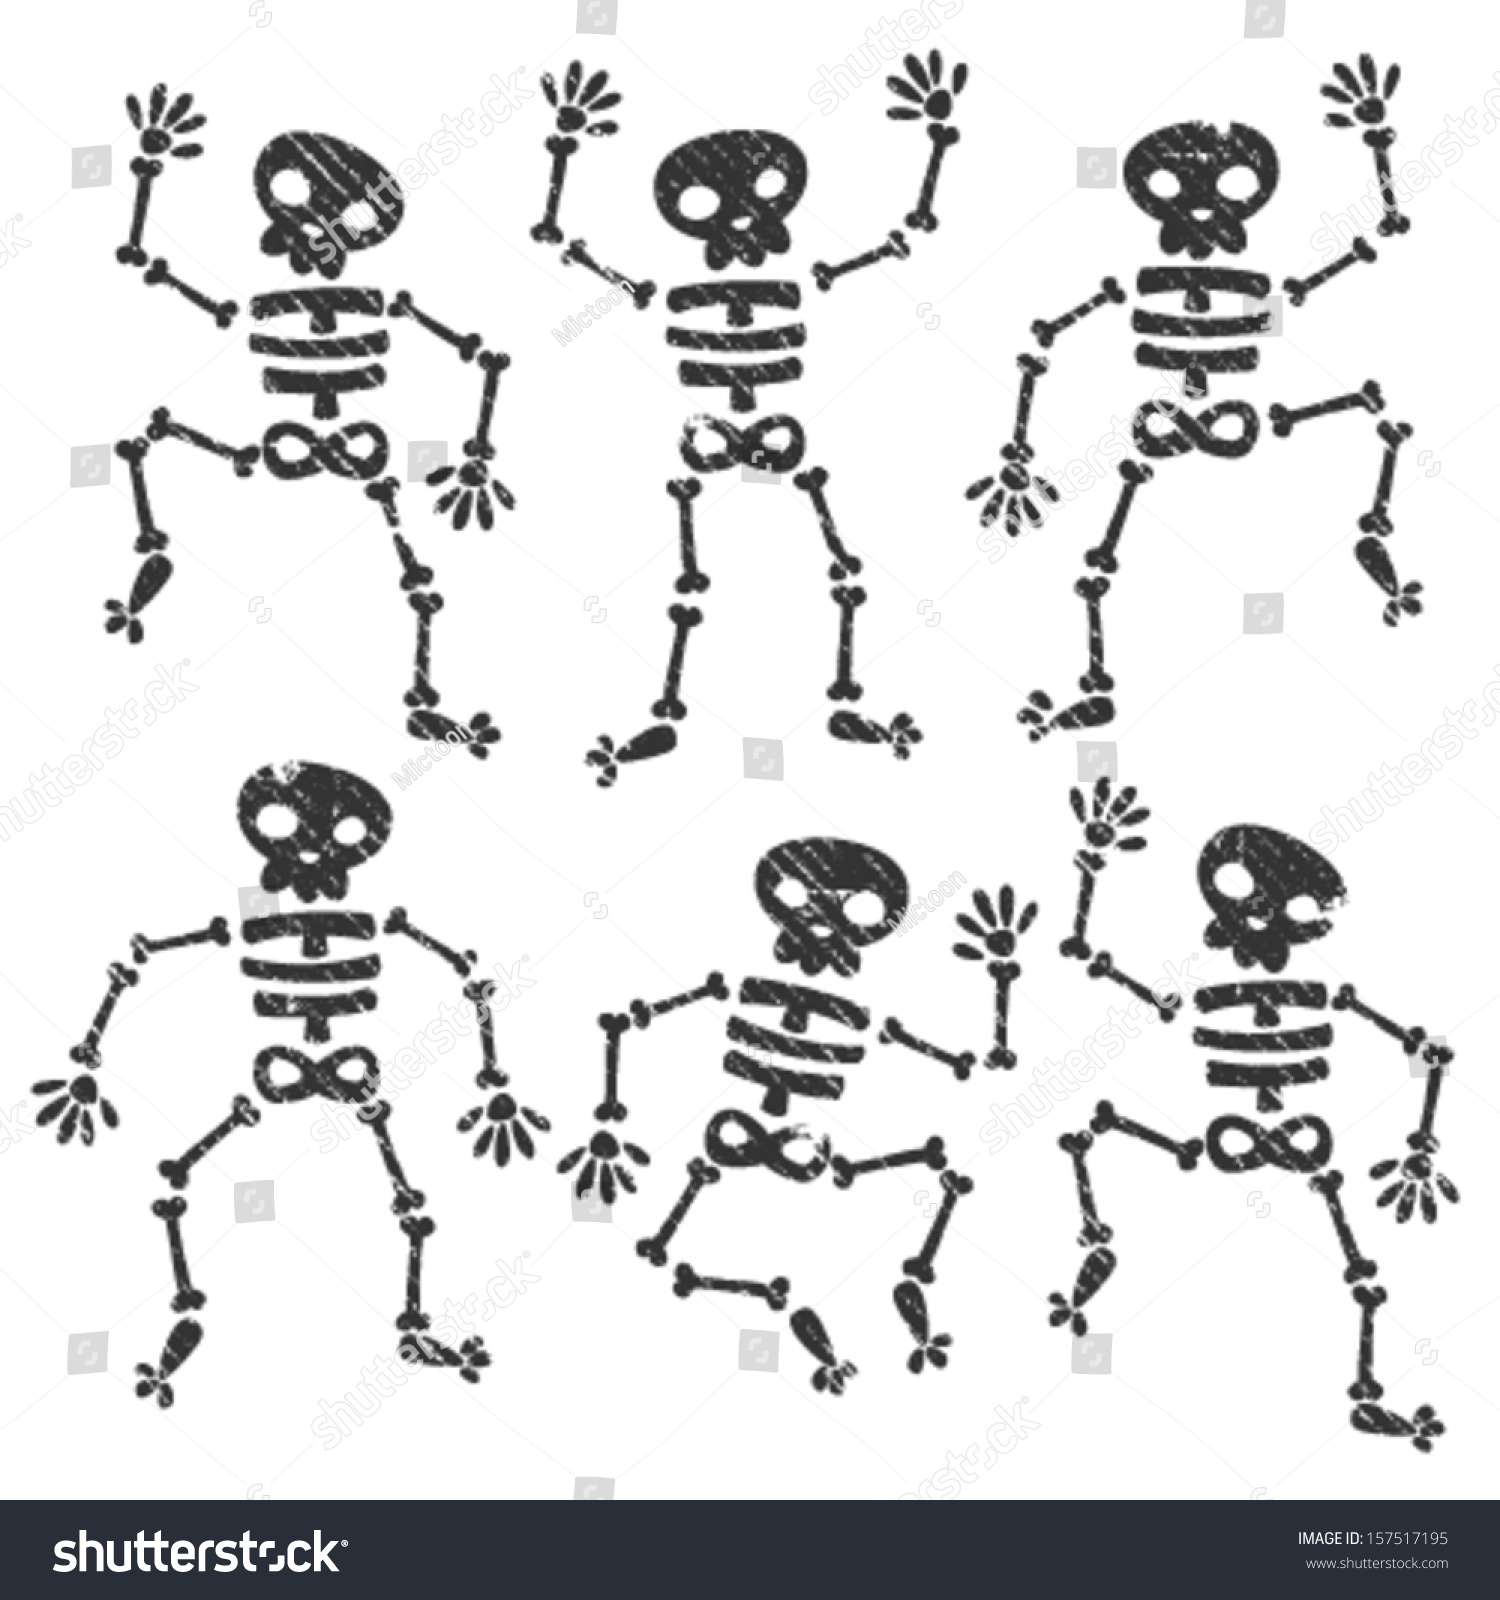 Set Of Grunge Dancing Skeletons Stock Vector Illustration 157517195